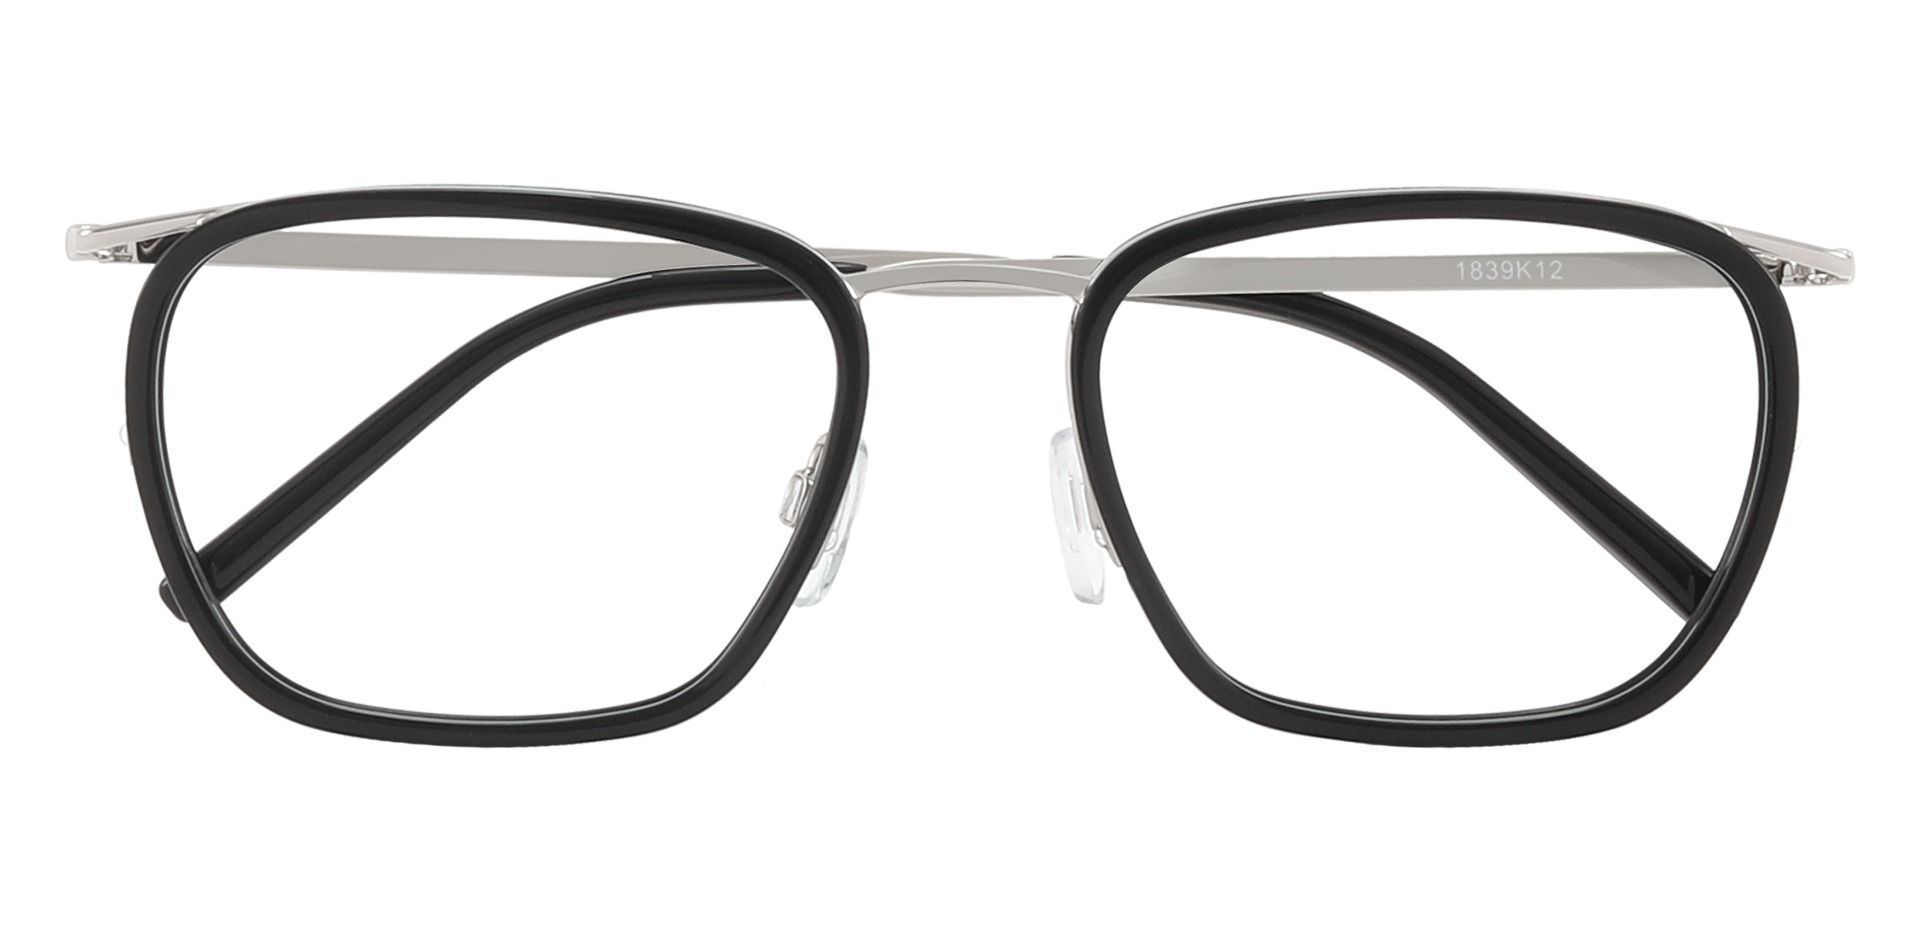 Springfield Square Prescription Glasses - Black